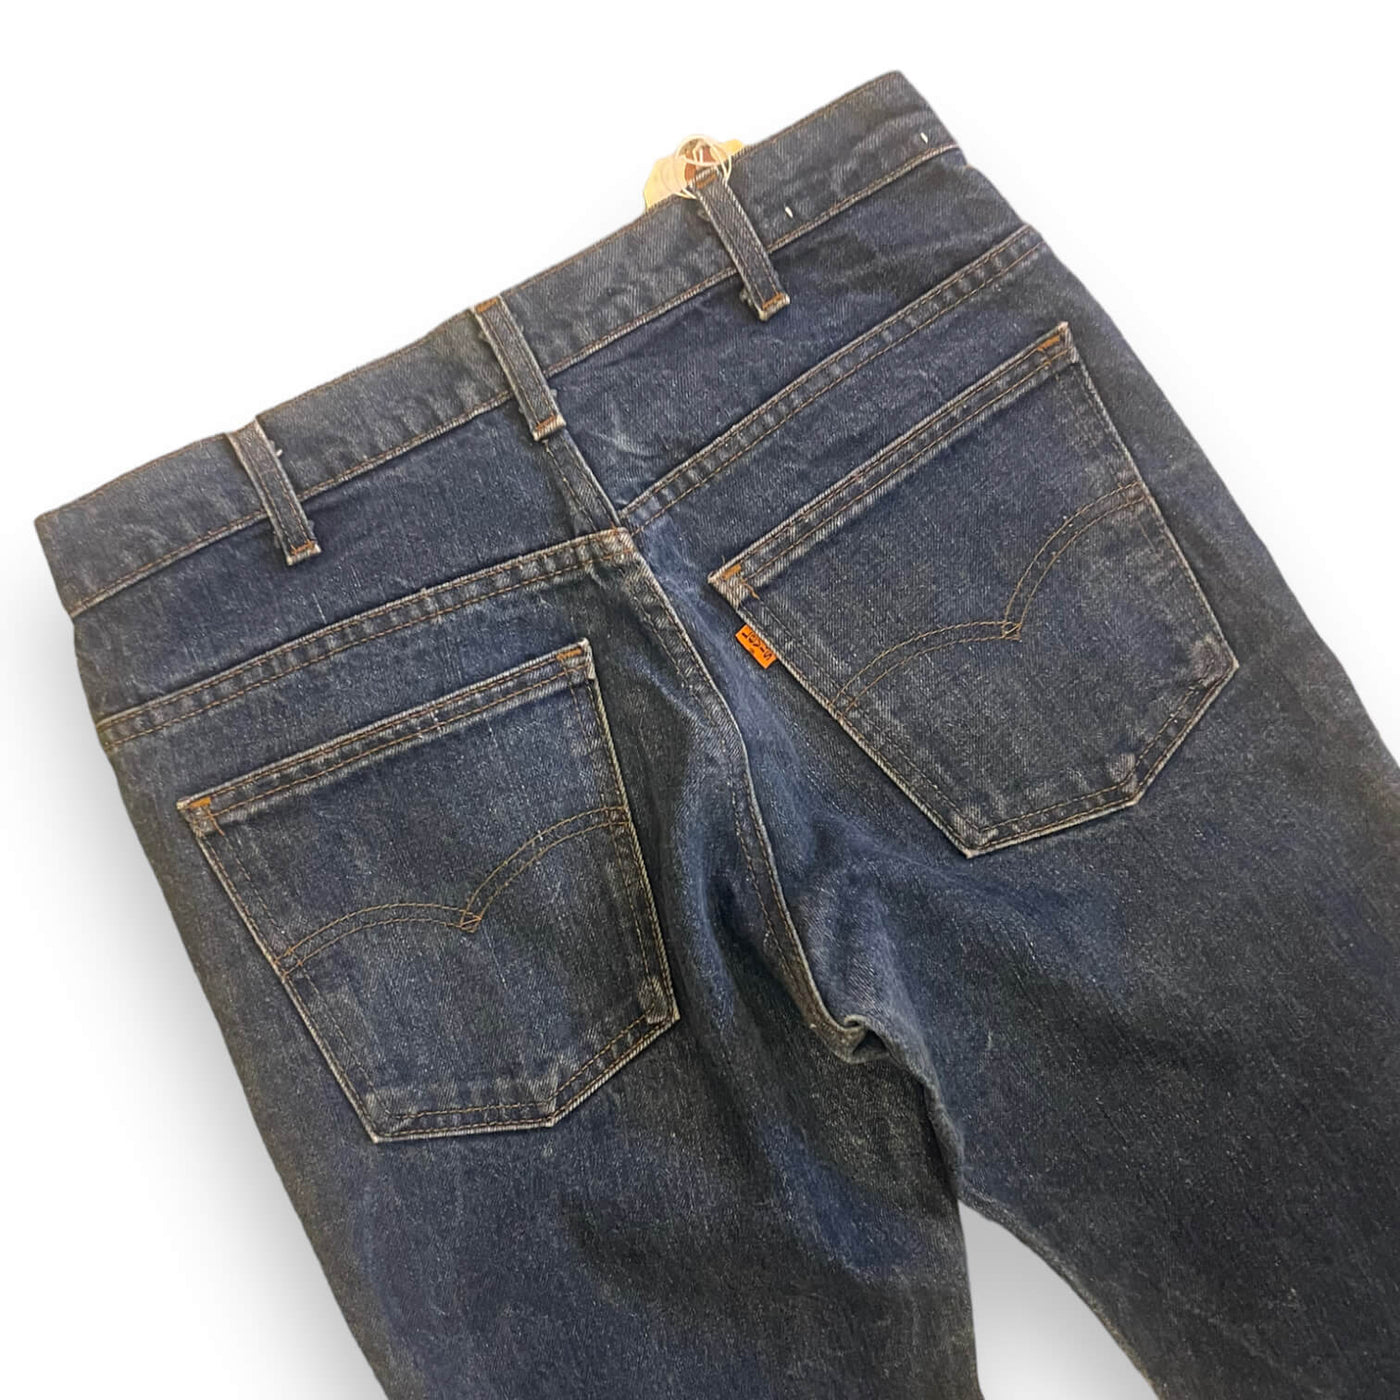 Levi's 217 Back waistband with orange Levi's tab on the back pocket